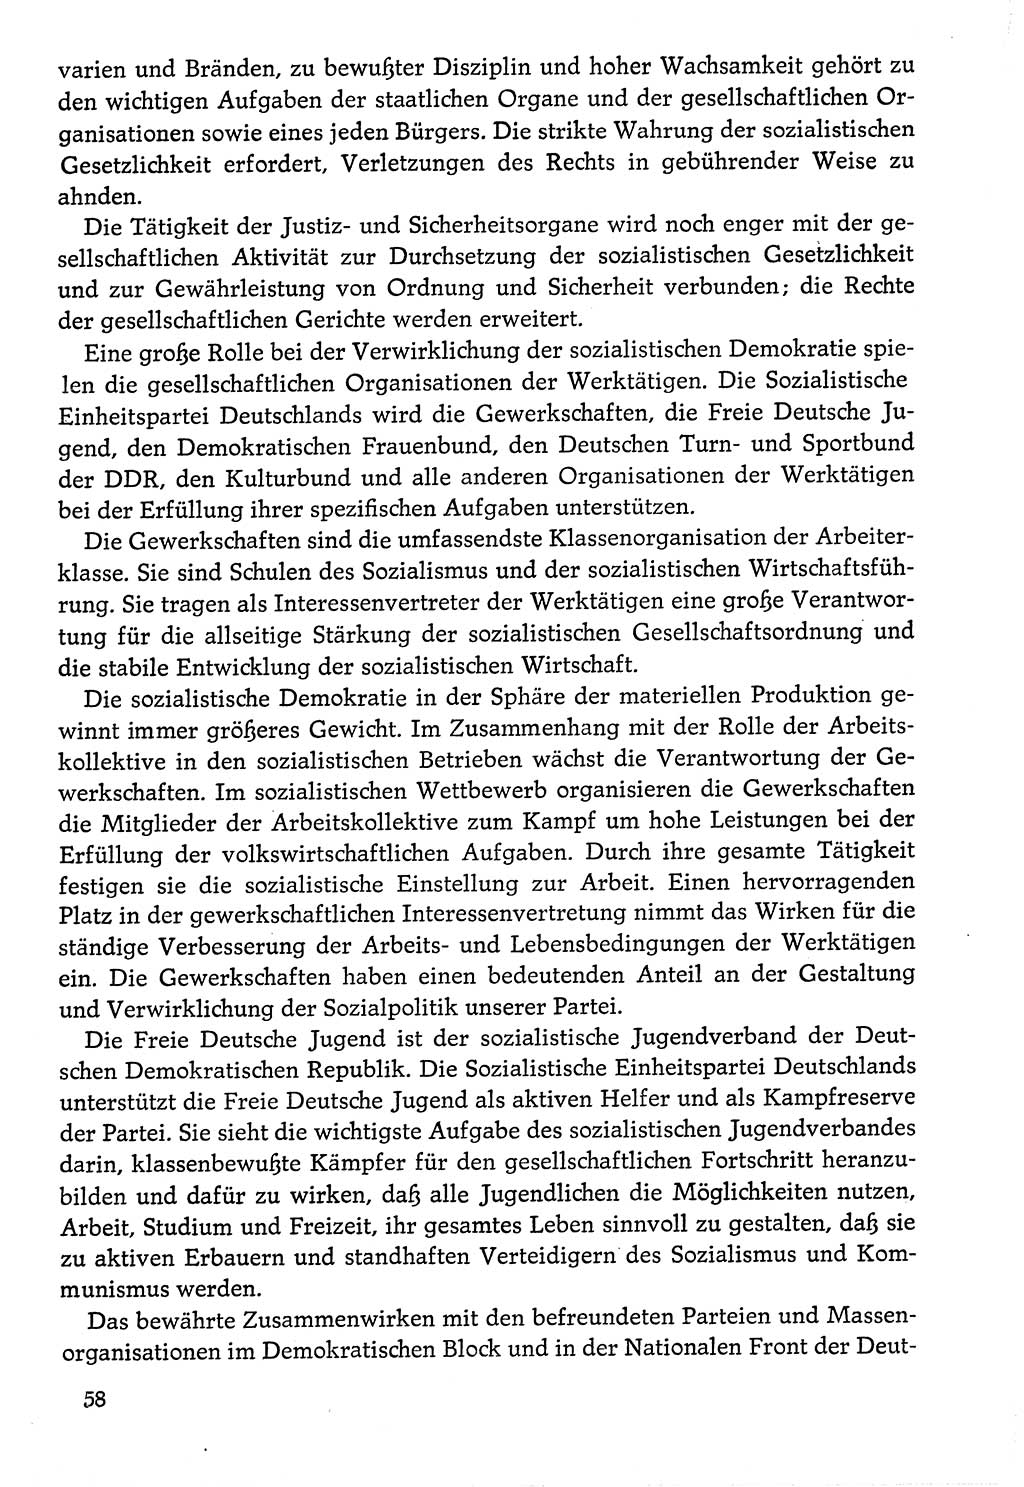 Dokumente der Sozialistischen Einheitspartei Deutschlands (SED) [Deutsche Demokratische Republik (DDR)] 1976-1977, Seite 58 (Dok. SED DDR 1976-1977, S. 58)